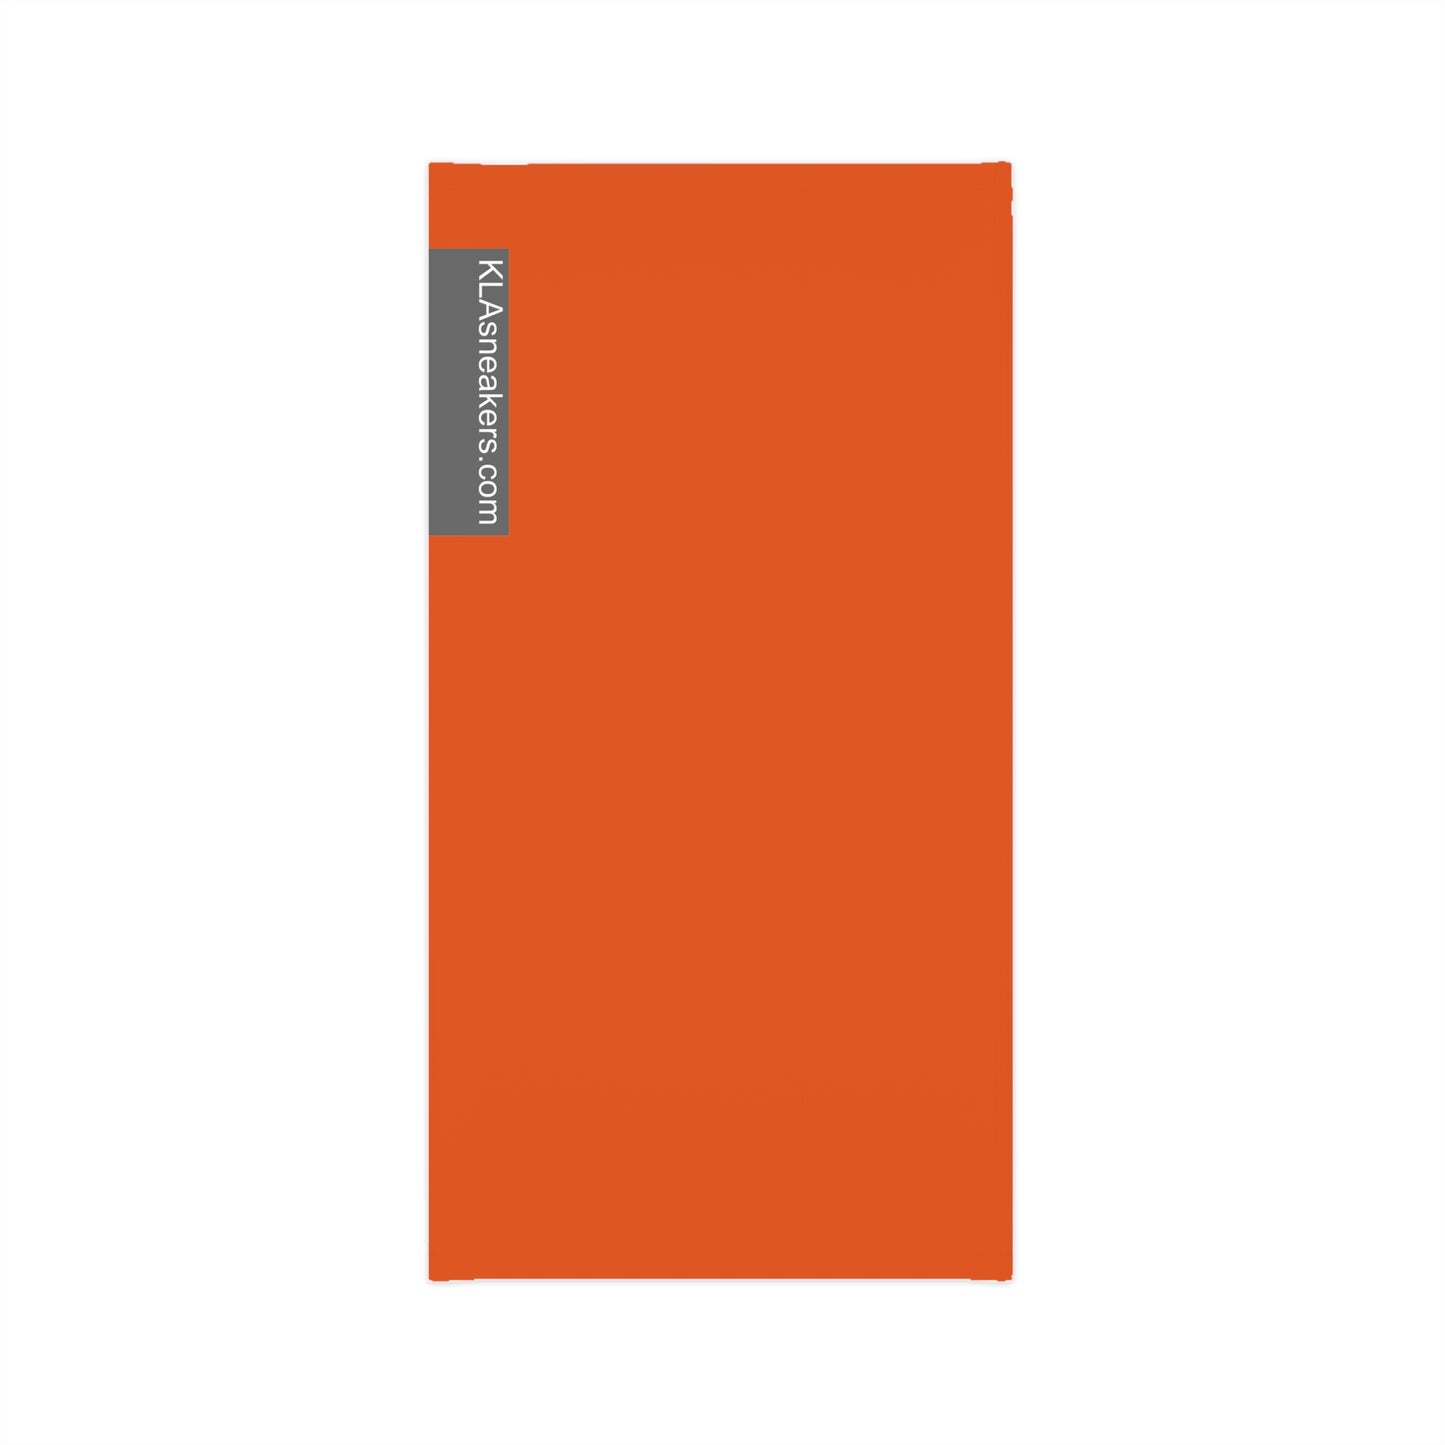 Lightweight Neck Gaiter - Dark Orange L